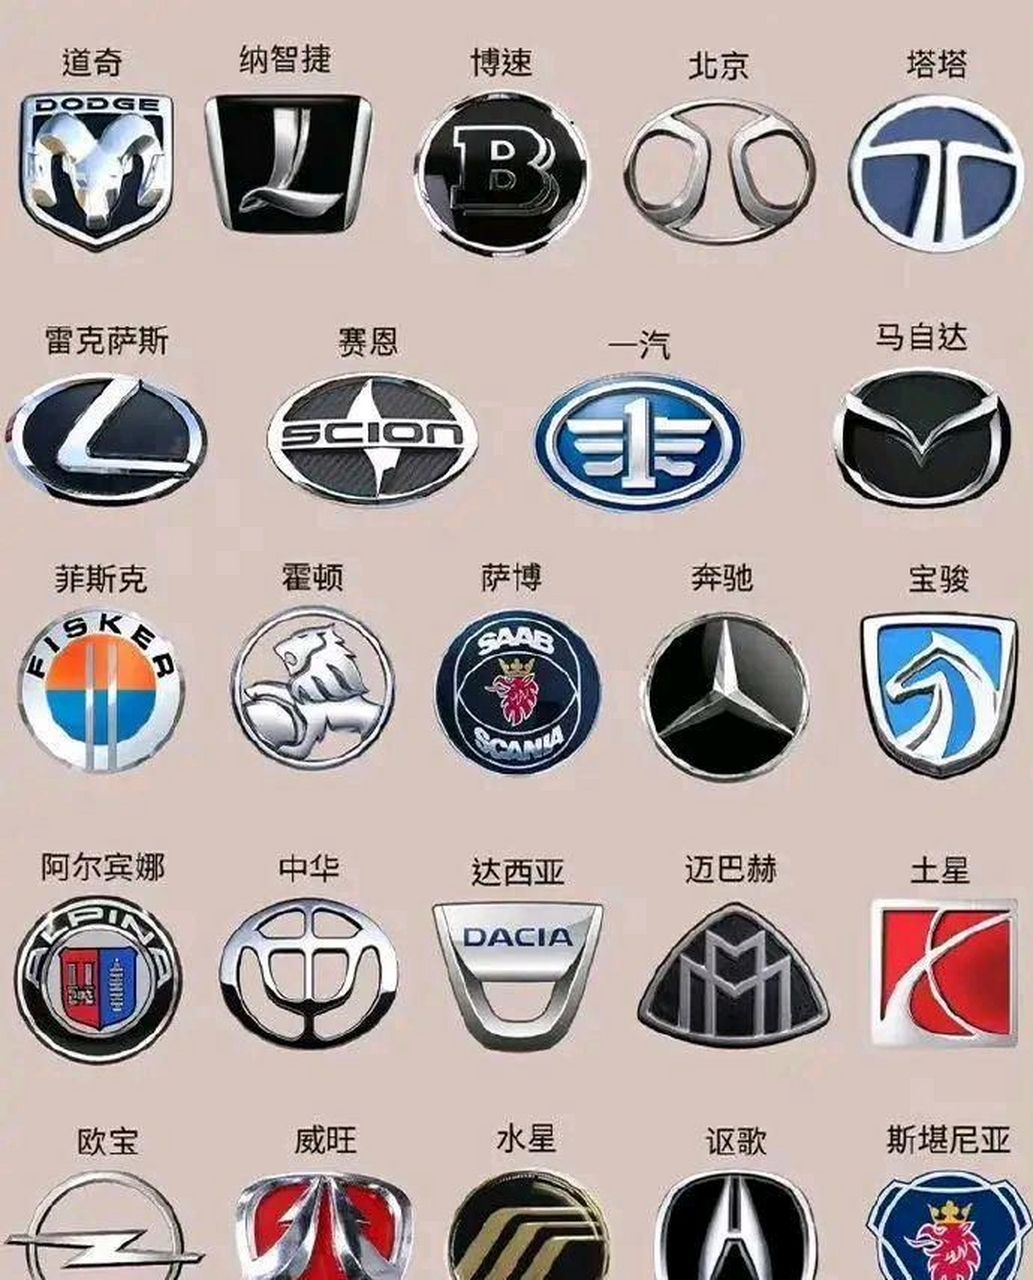 完成中文改写:  看完汽车标志大全,开车就不用担心了